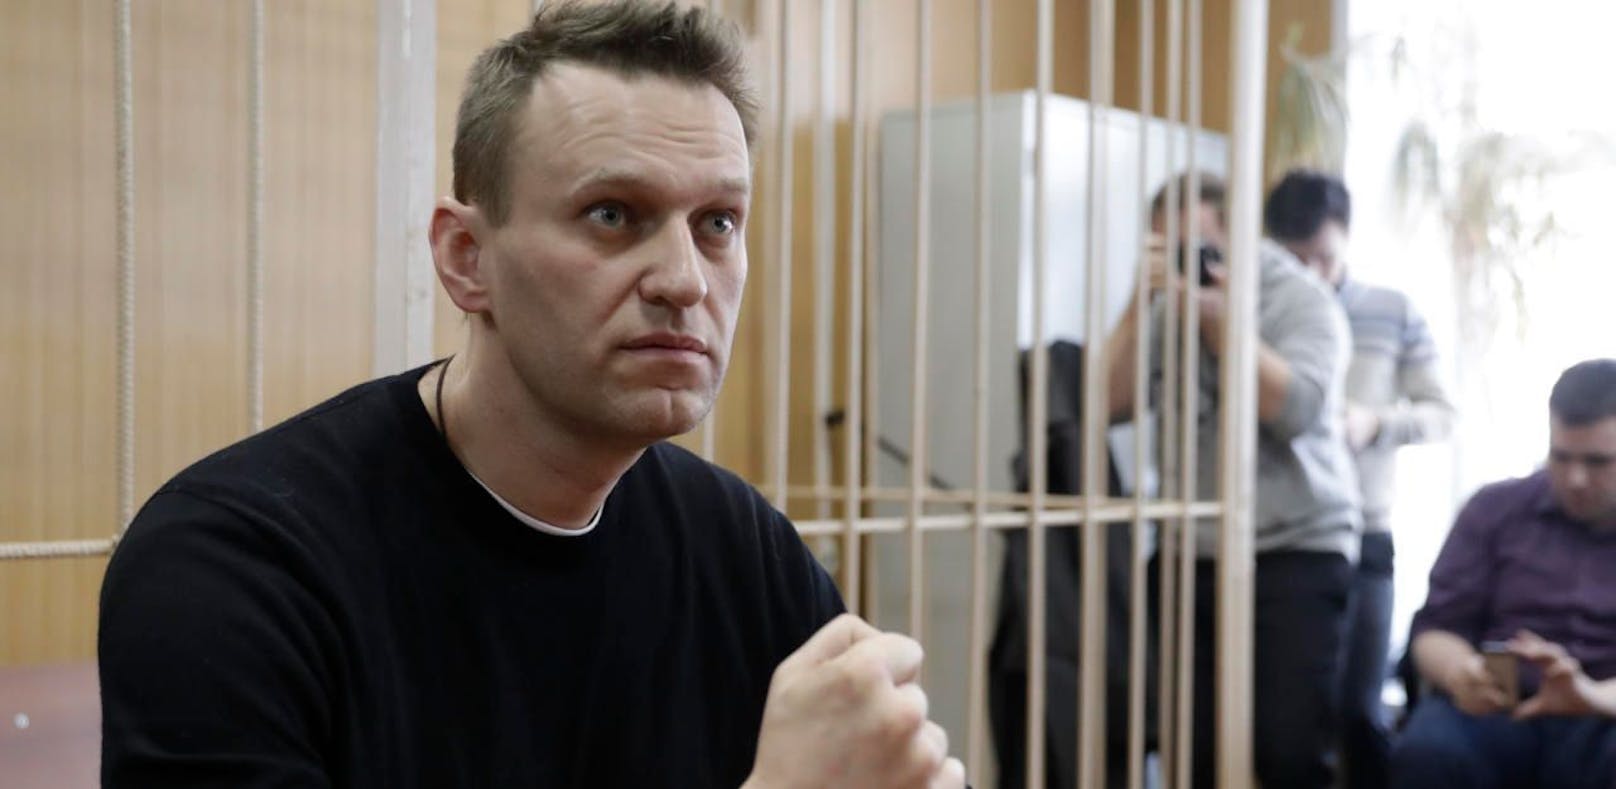 Putin-Gegner Nawalny darf nicht mehr kandidieren